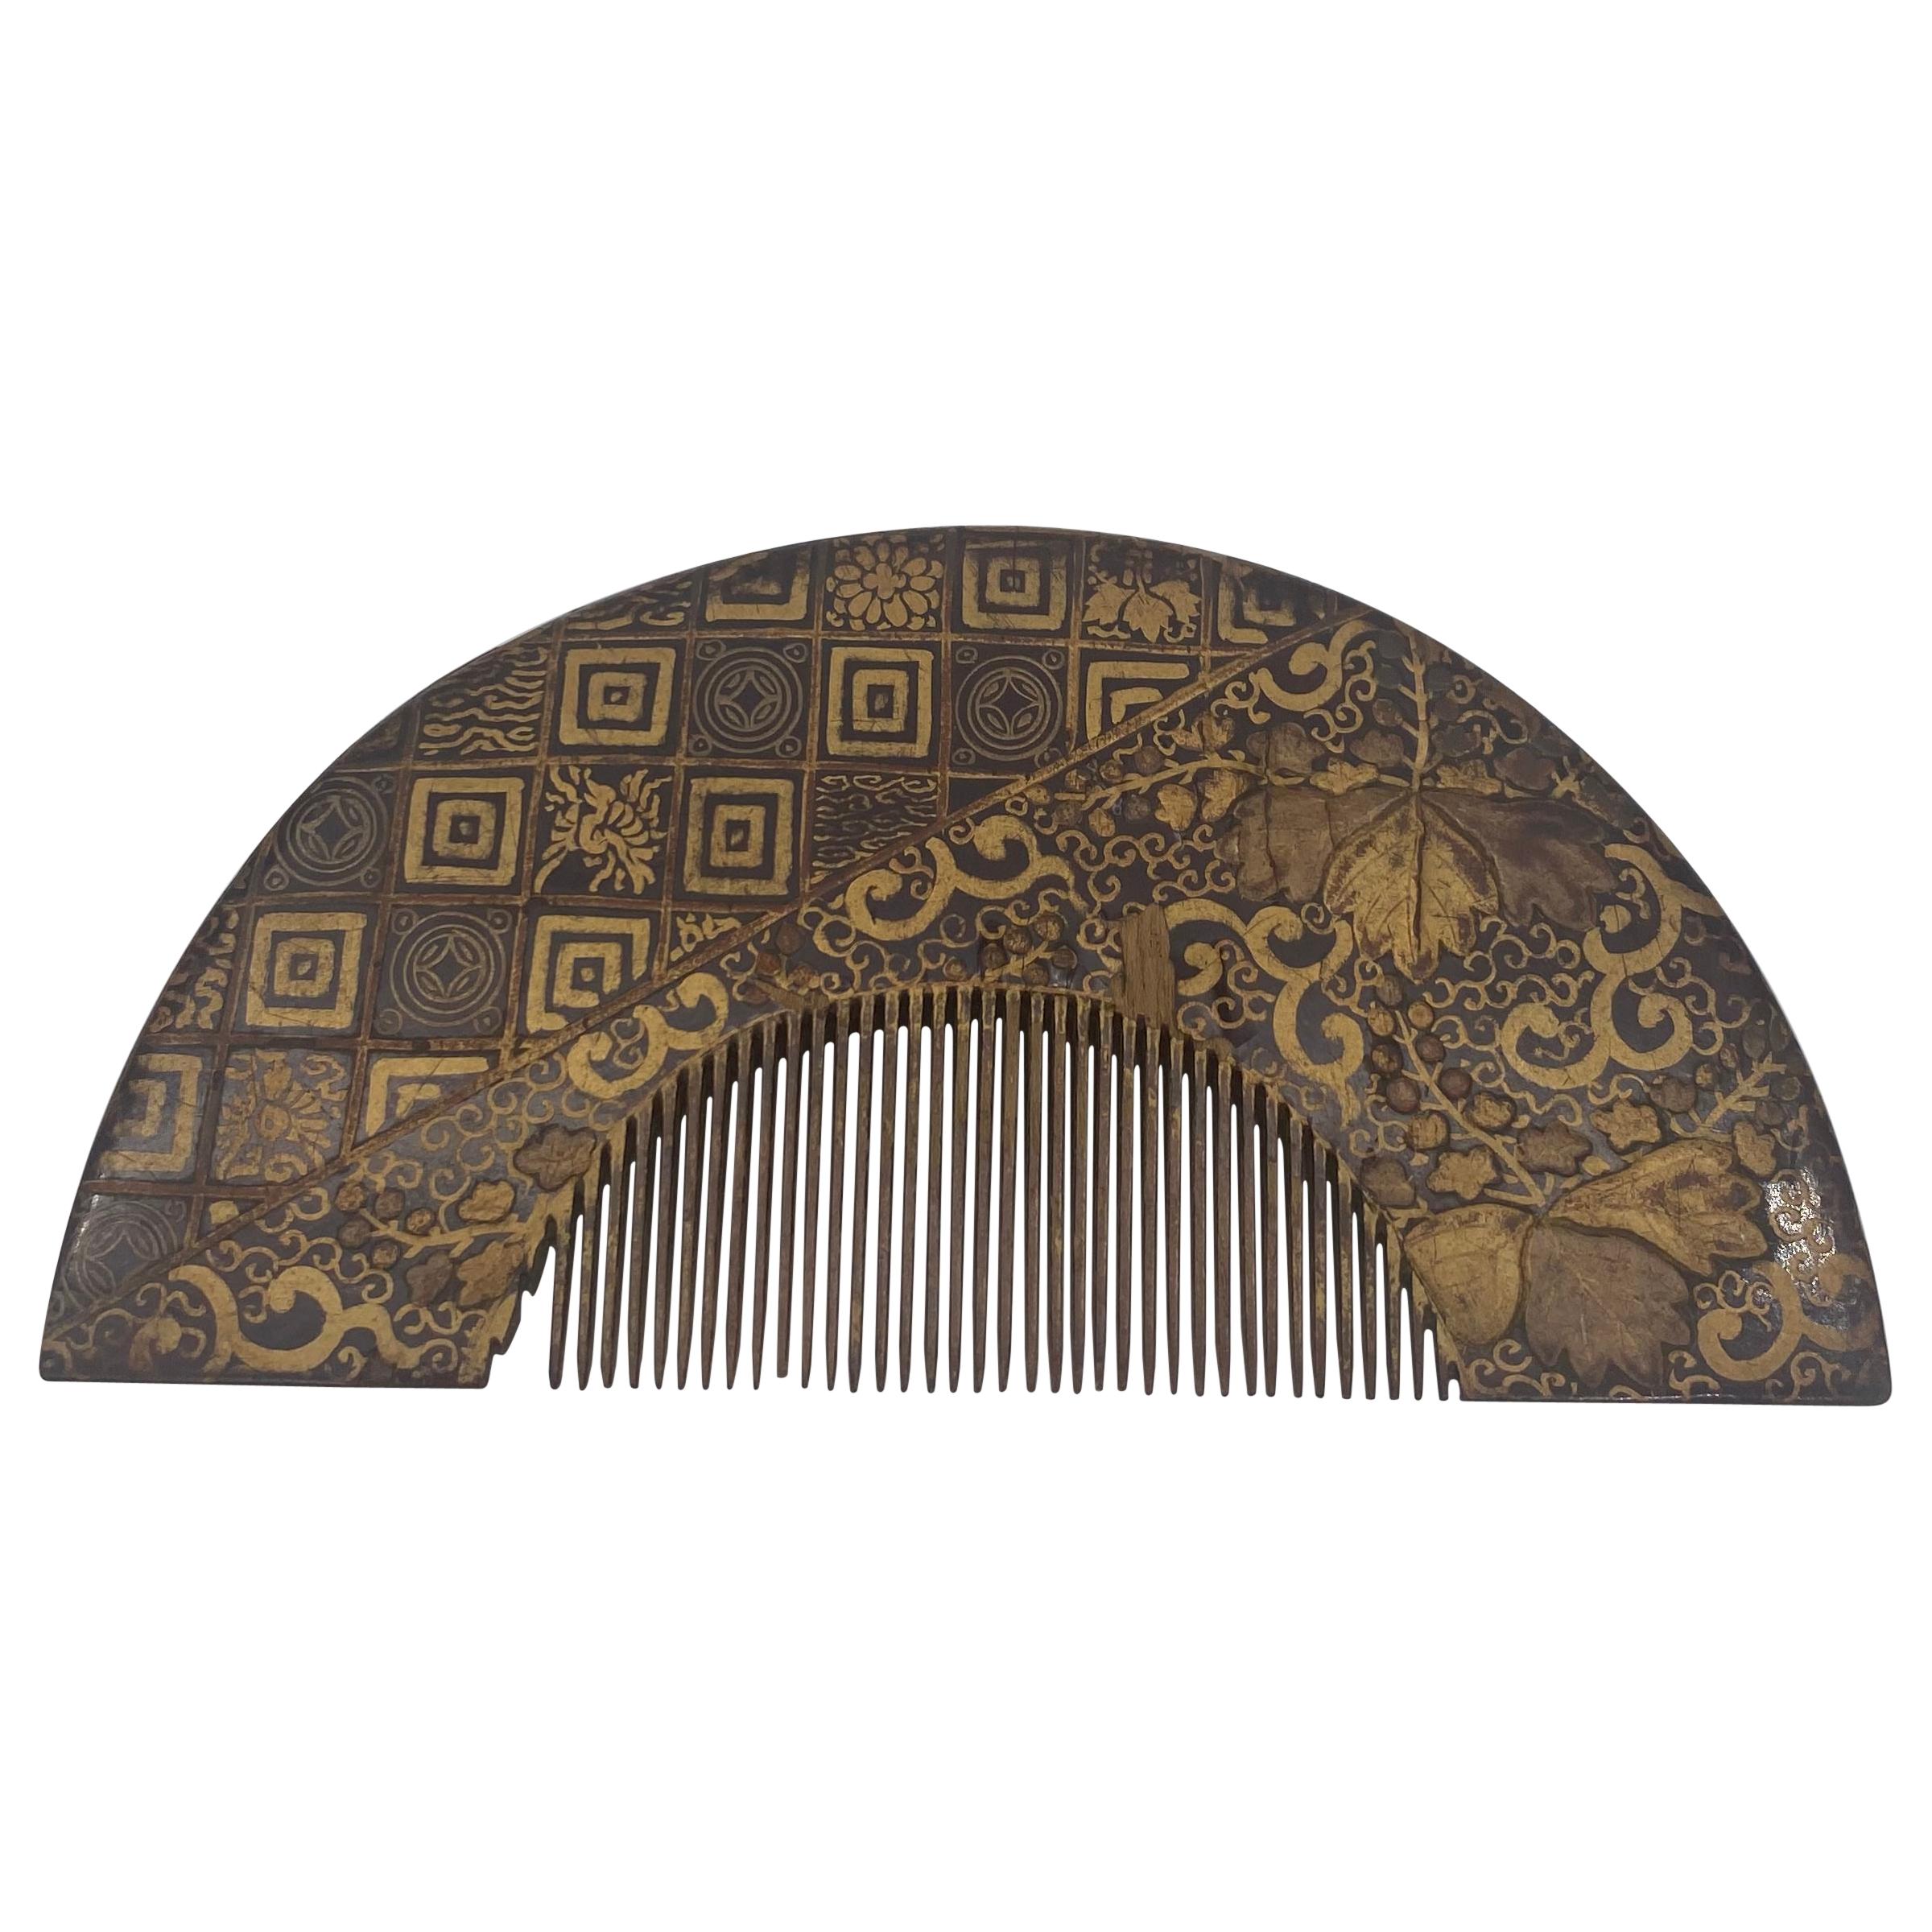 Peigne chinoise en laque dorée du 19ème siècle